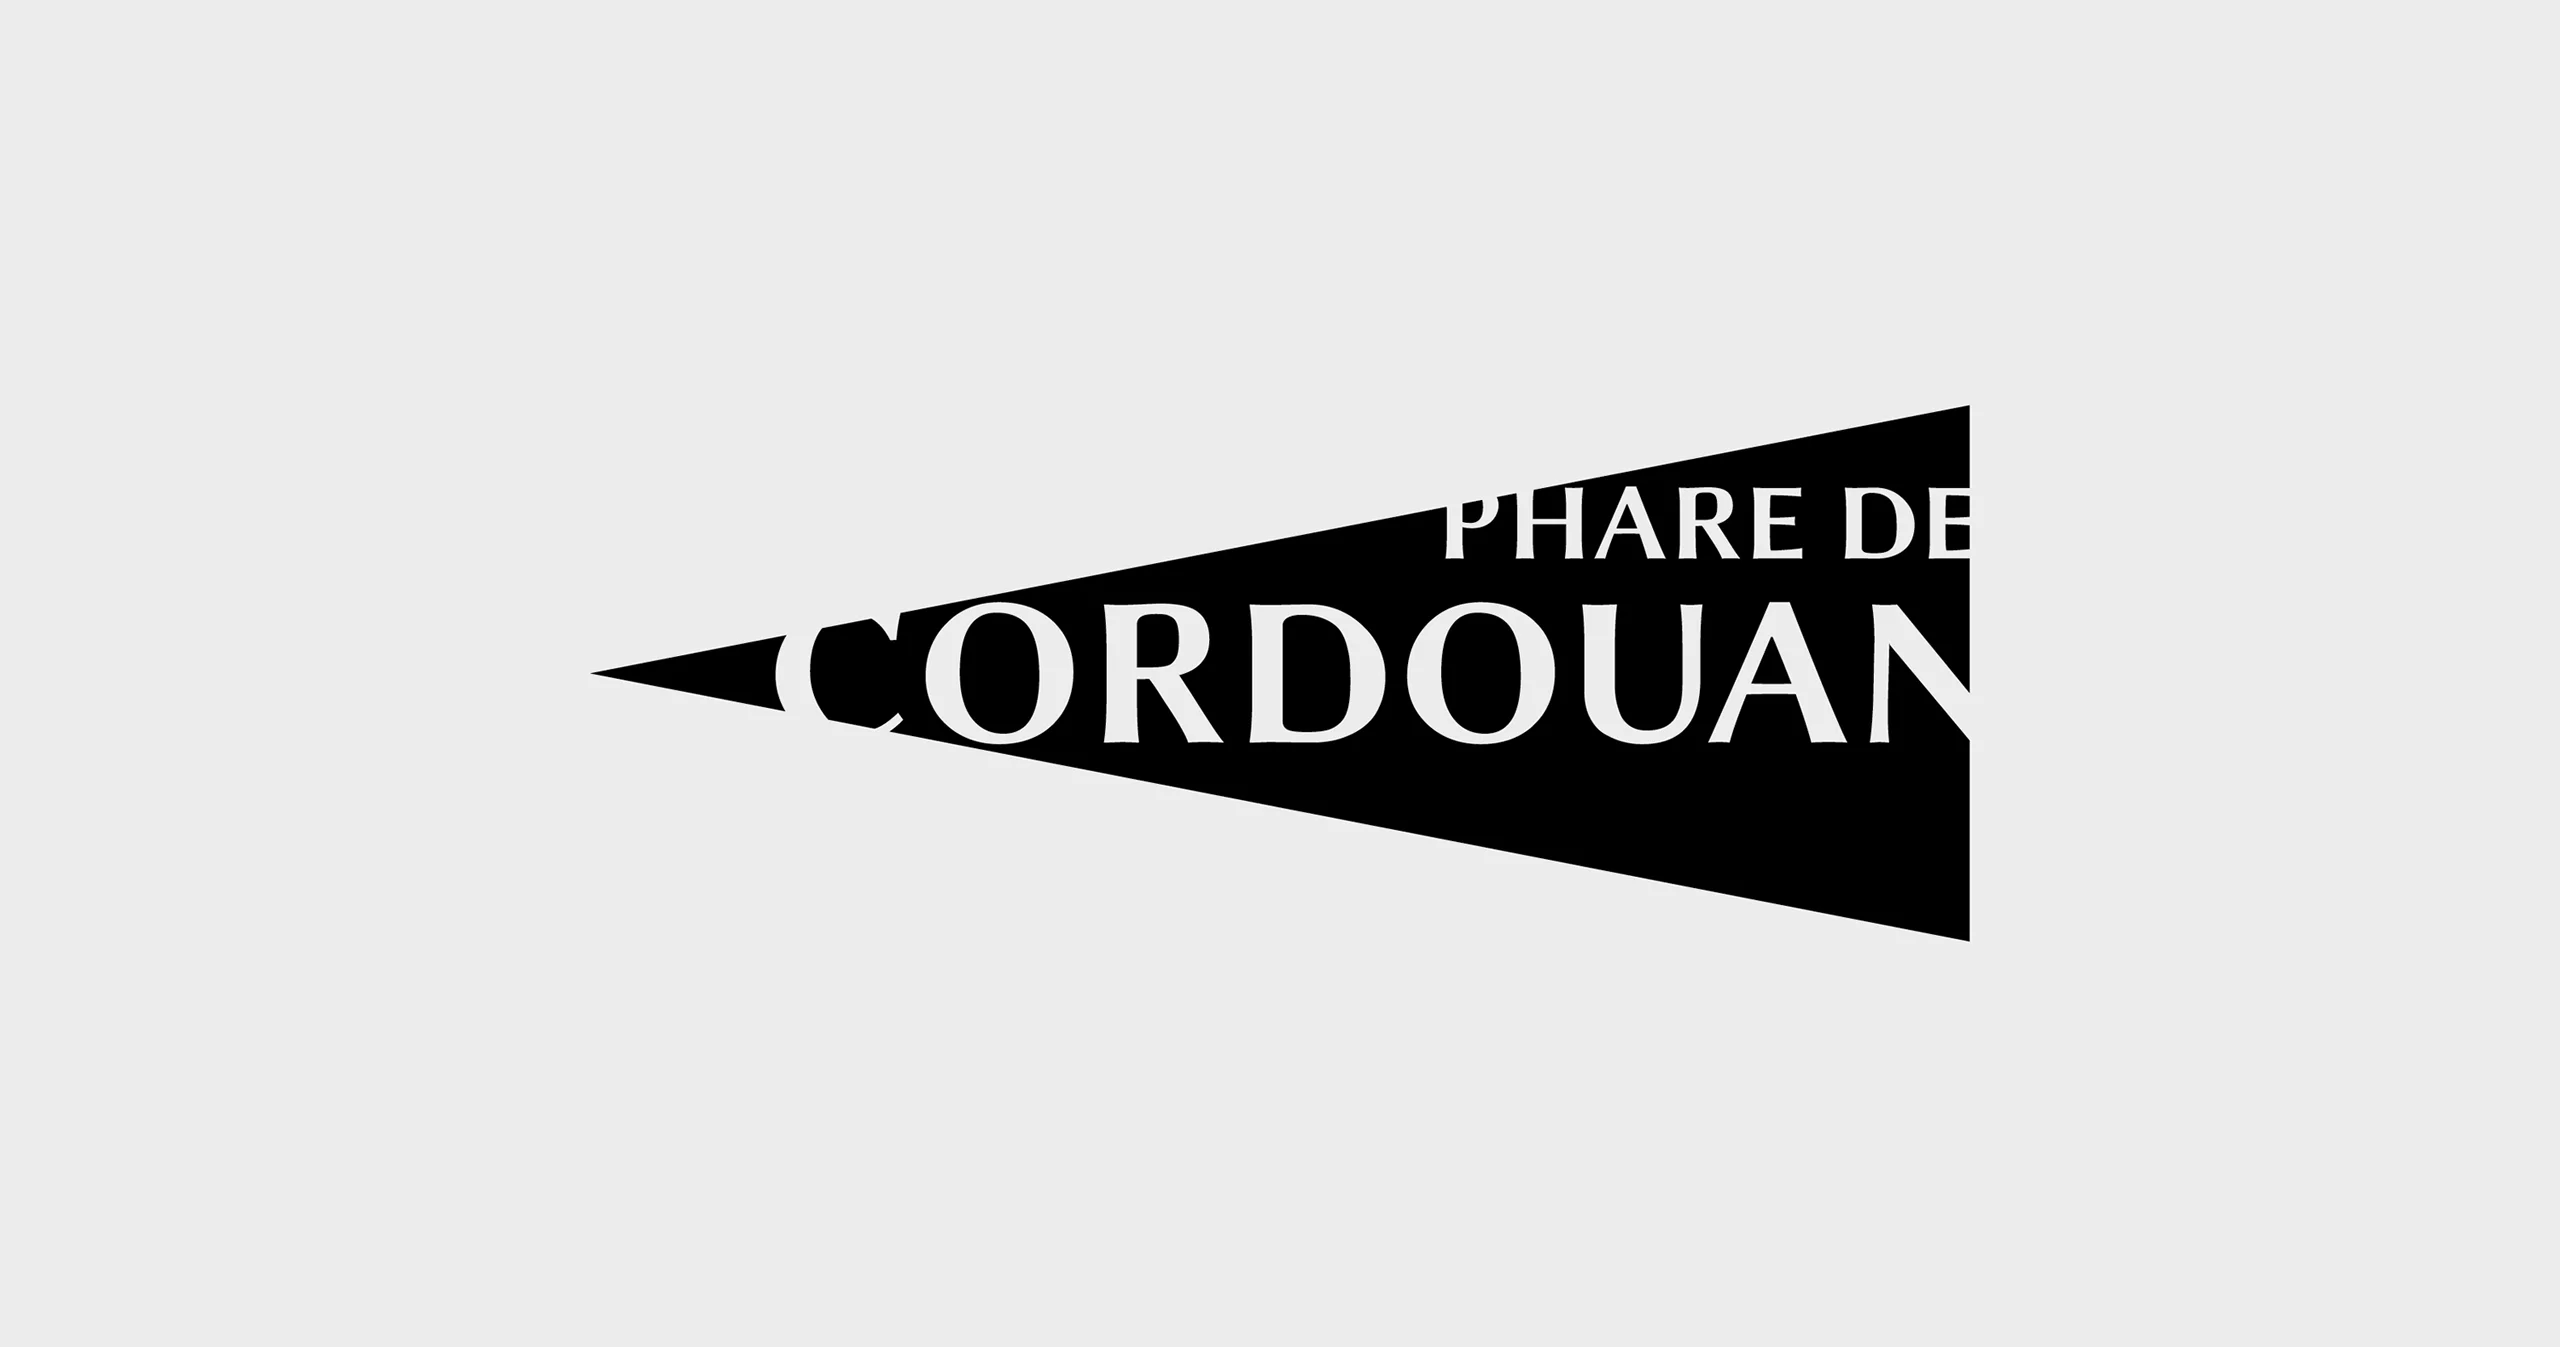 Logo du phare de corduan, la typographie est placé sur un aplat en forme de faisceau lumineux